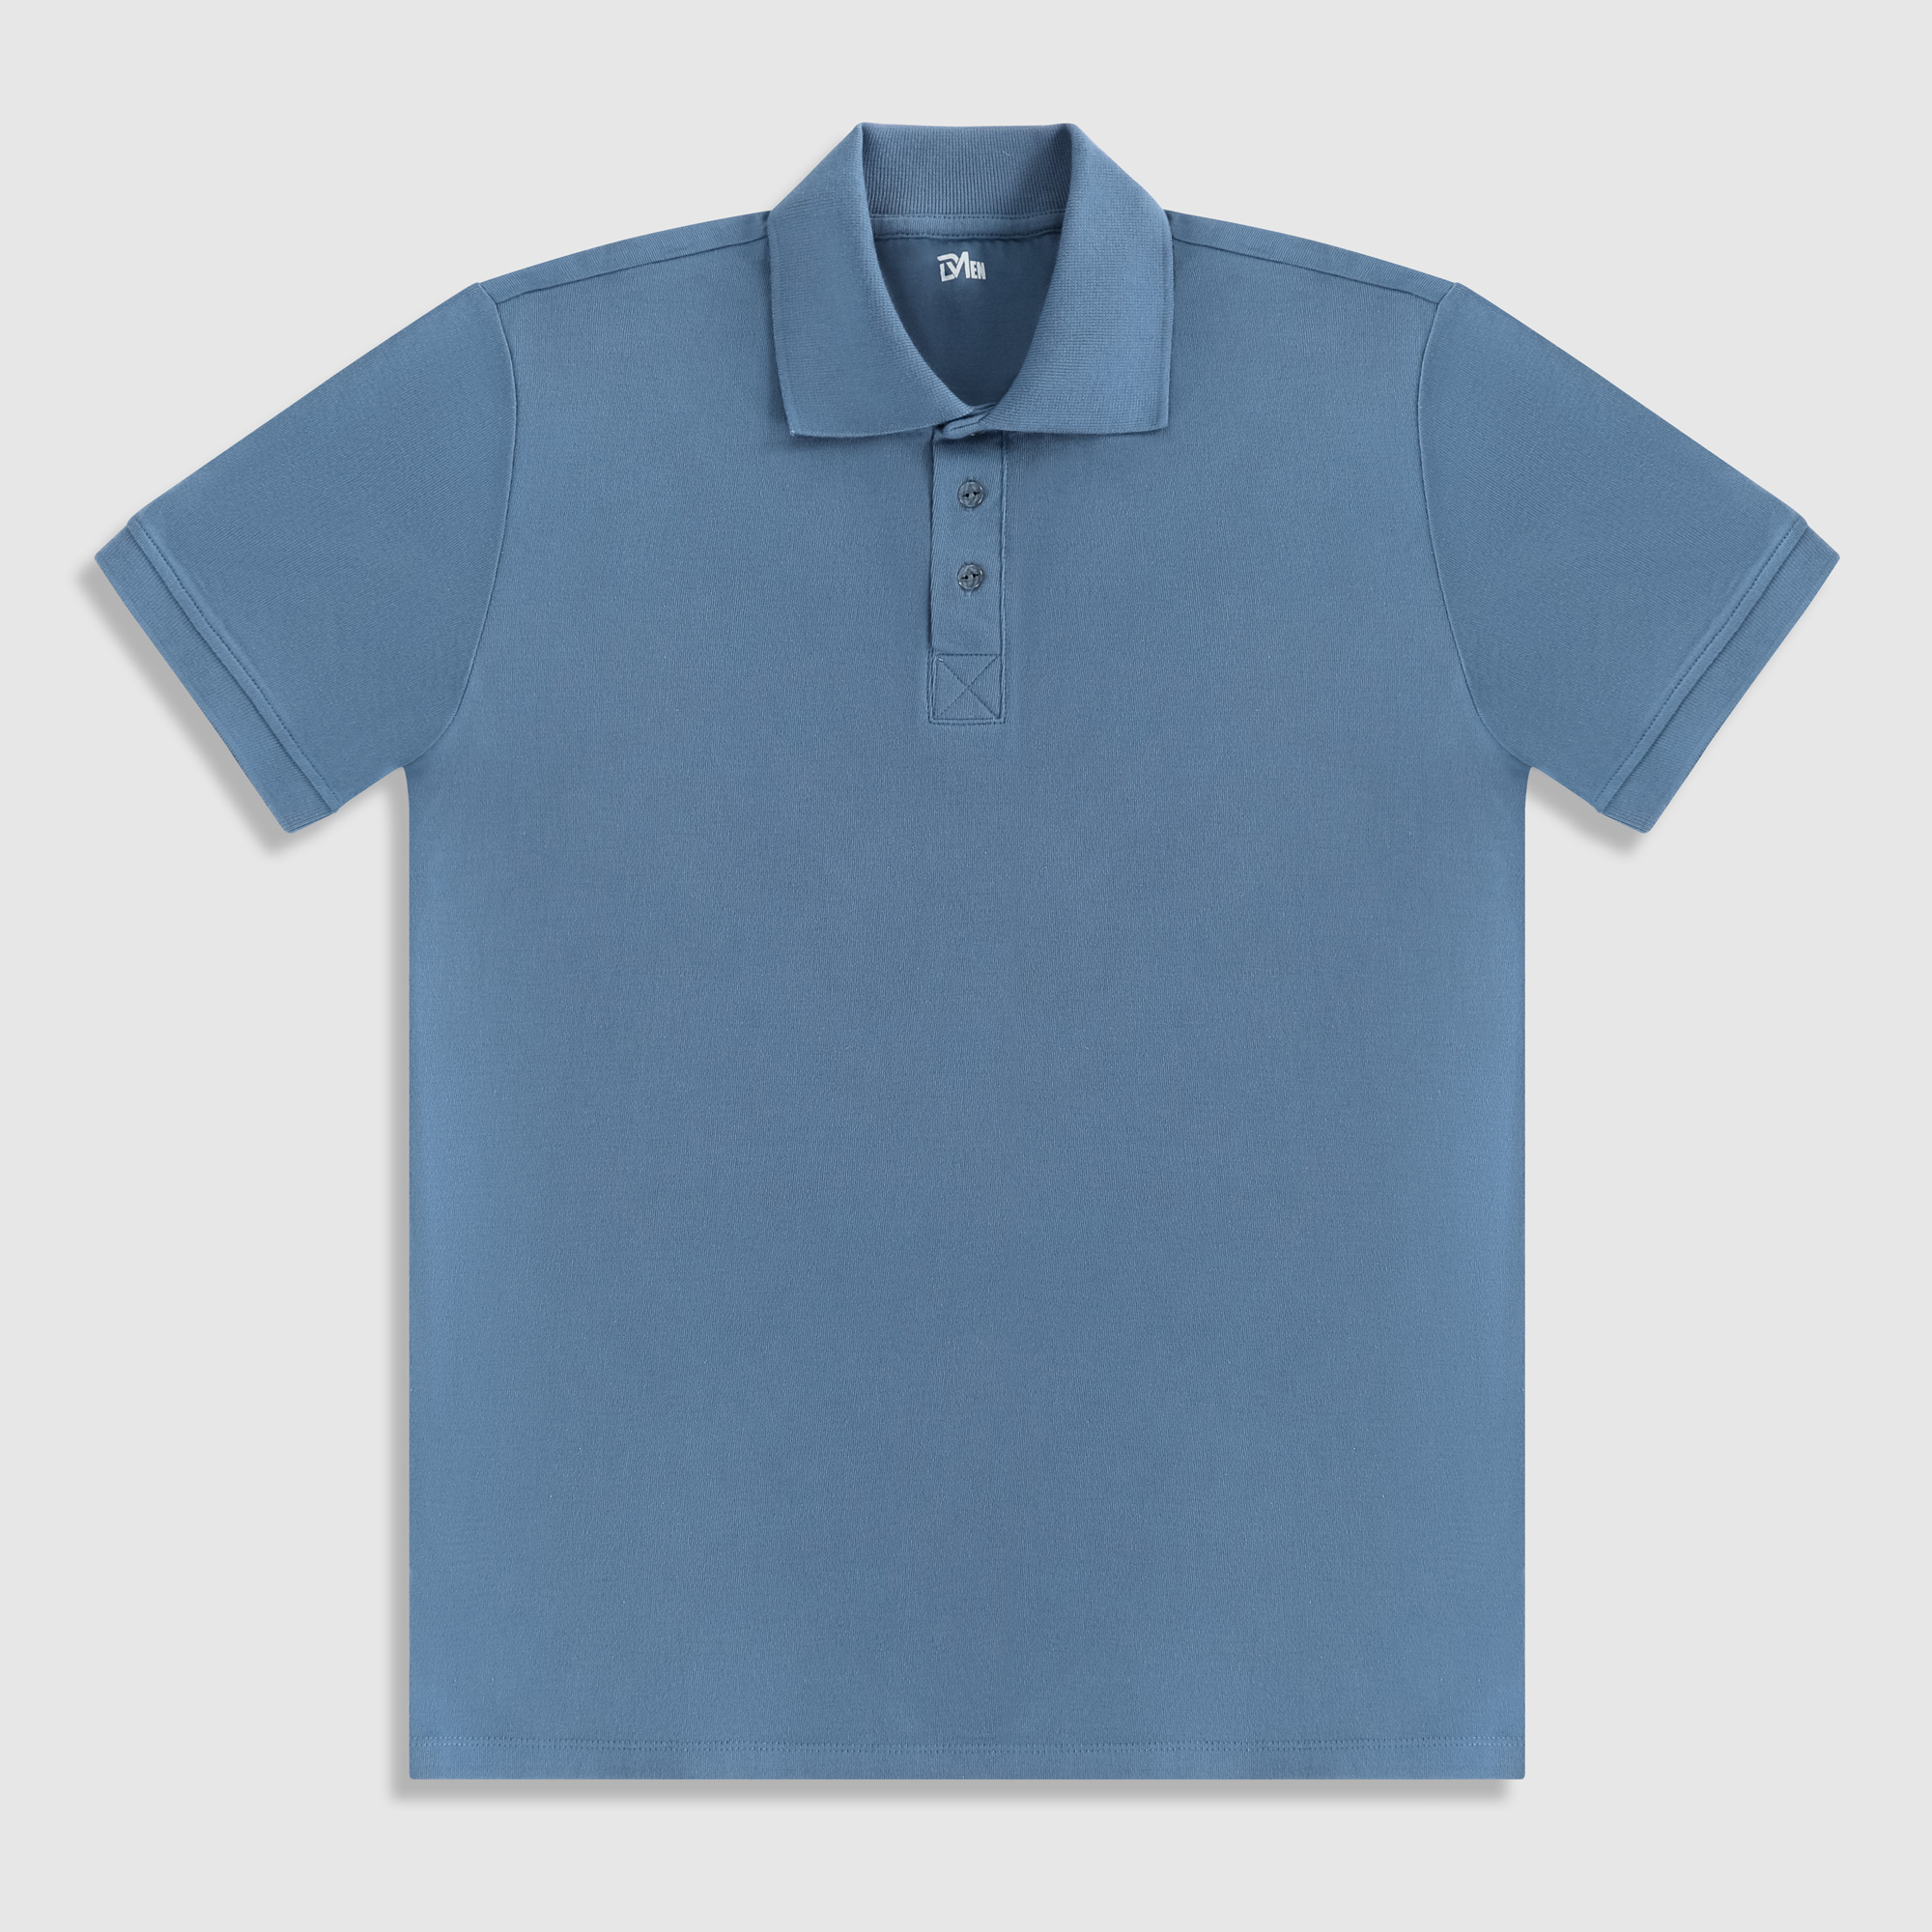 Рубашка мужская Diva Teks поло голубая, цвет голубой, размер XL - фото 1